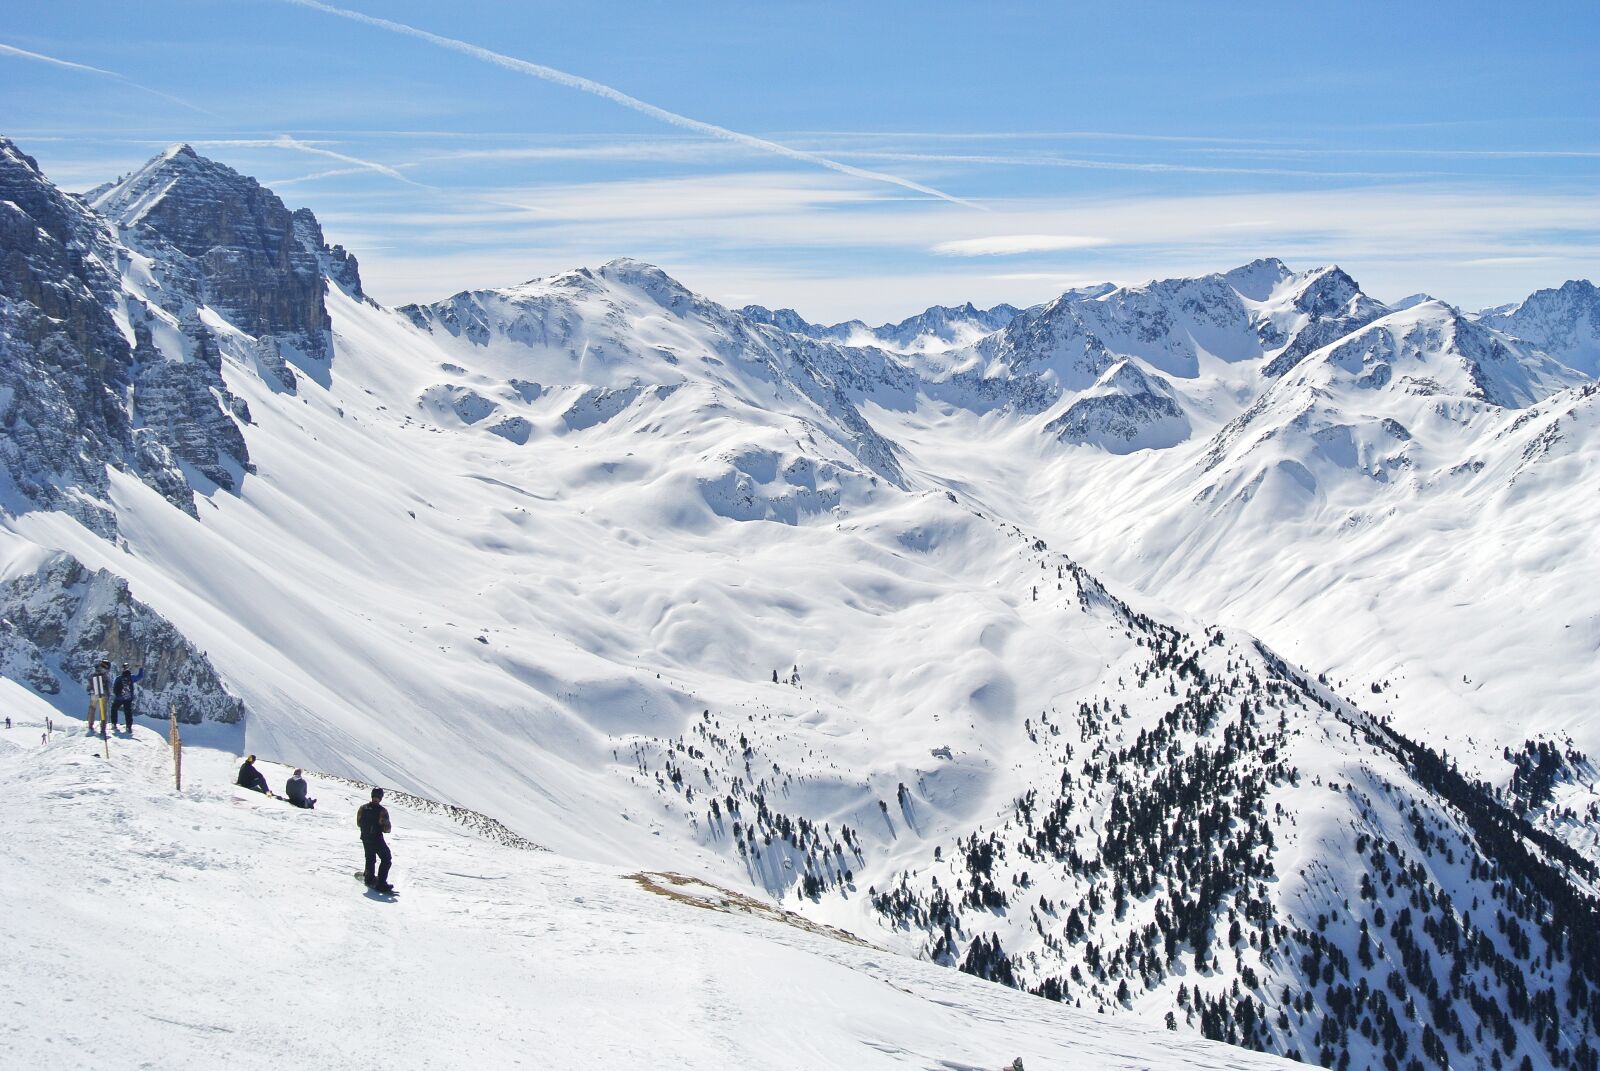 Nikon 1 J1 sample photo. Alpine, mountains, ski photography